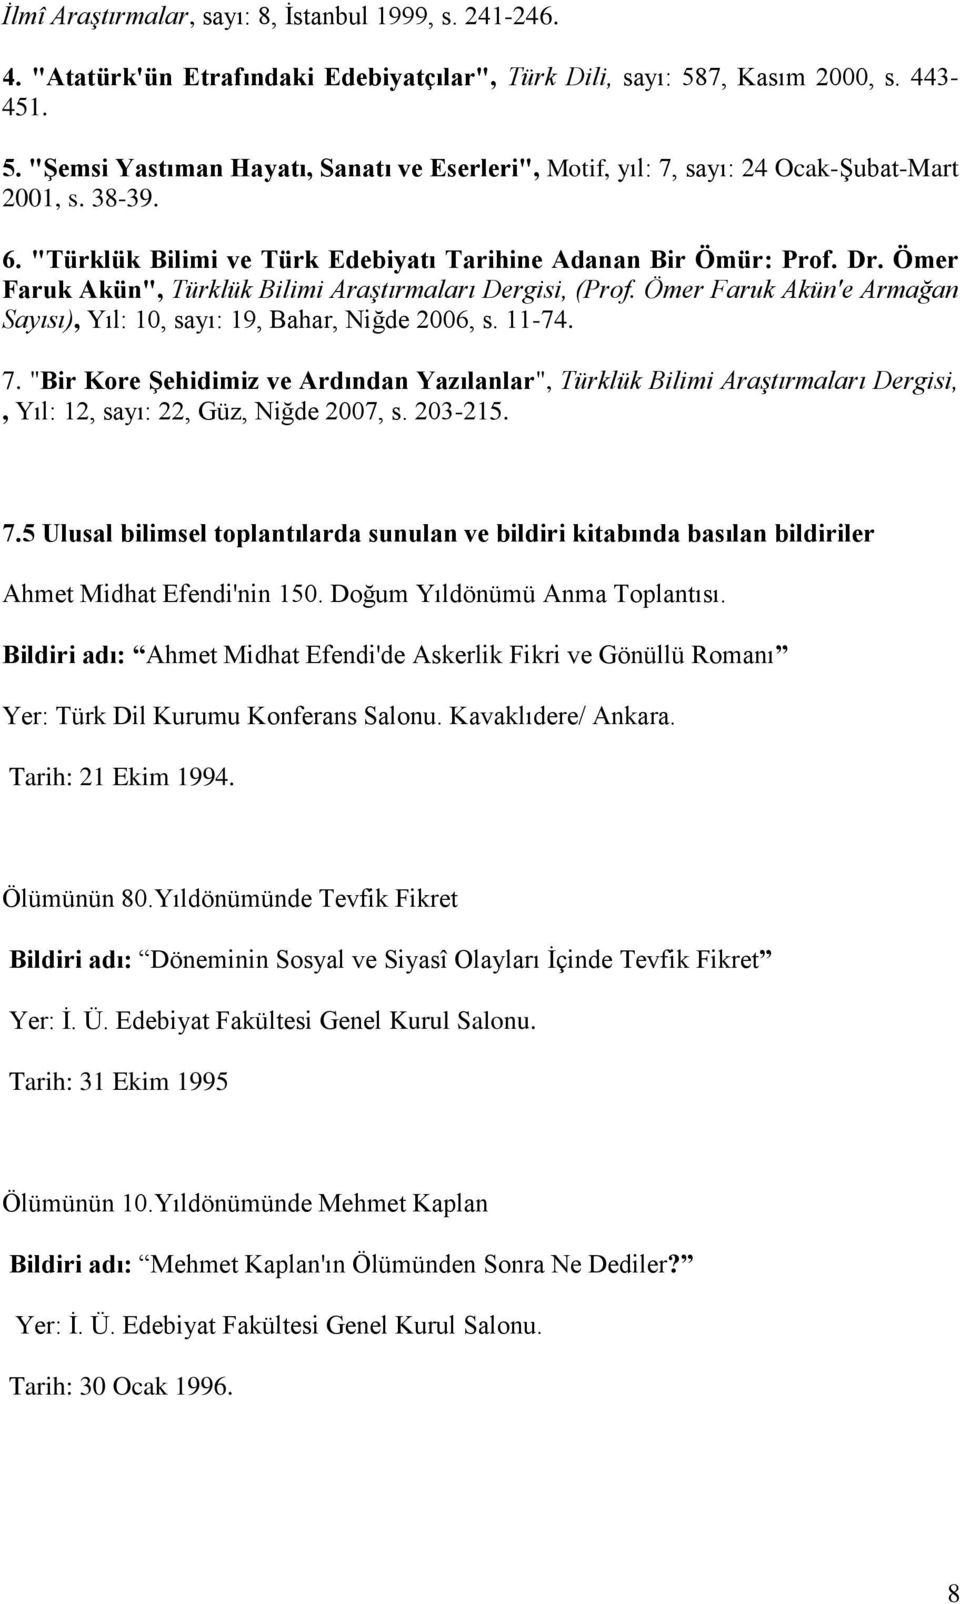 Dr. Ömer Faruk Akün", Türklük Bilimi Araştırmaları Dergisi, (Prof. Ömer Faruk Akün'e Armağan Sayısı), Yıl: 10, sayı: 19, Bahar, Niğde 2006, s. 11-74. 7.